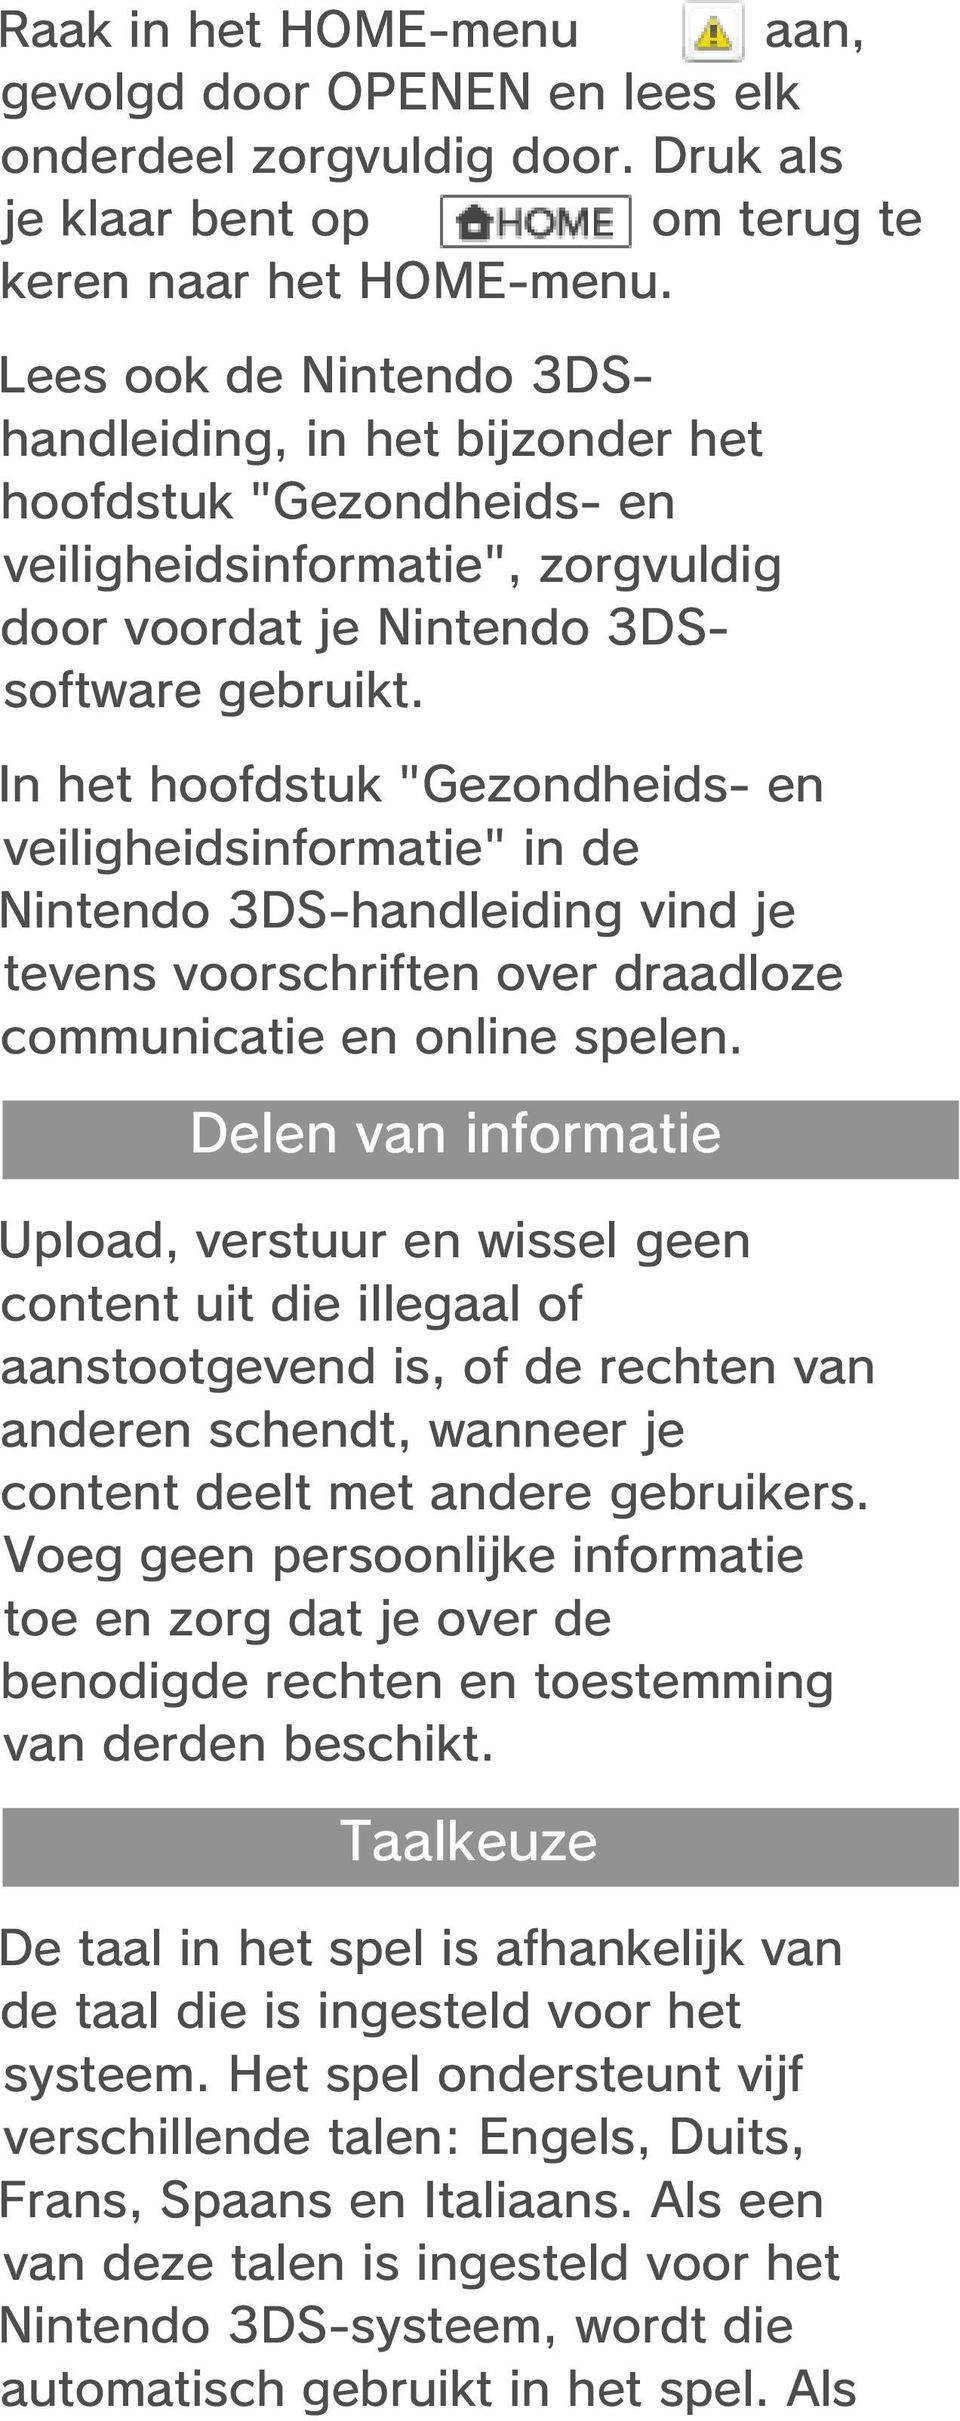 In het hoofdstuk "Gezondheids- en veiligheidsinformatie" in de Nintendo 3DS-handleiding vind je tevens voorschriften over draadloze communicatie en online spelen.